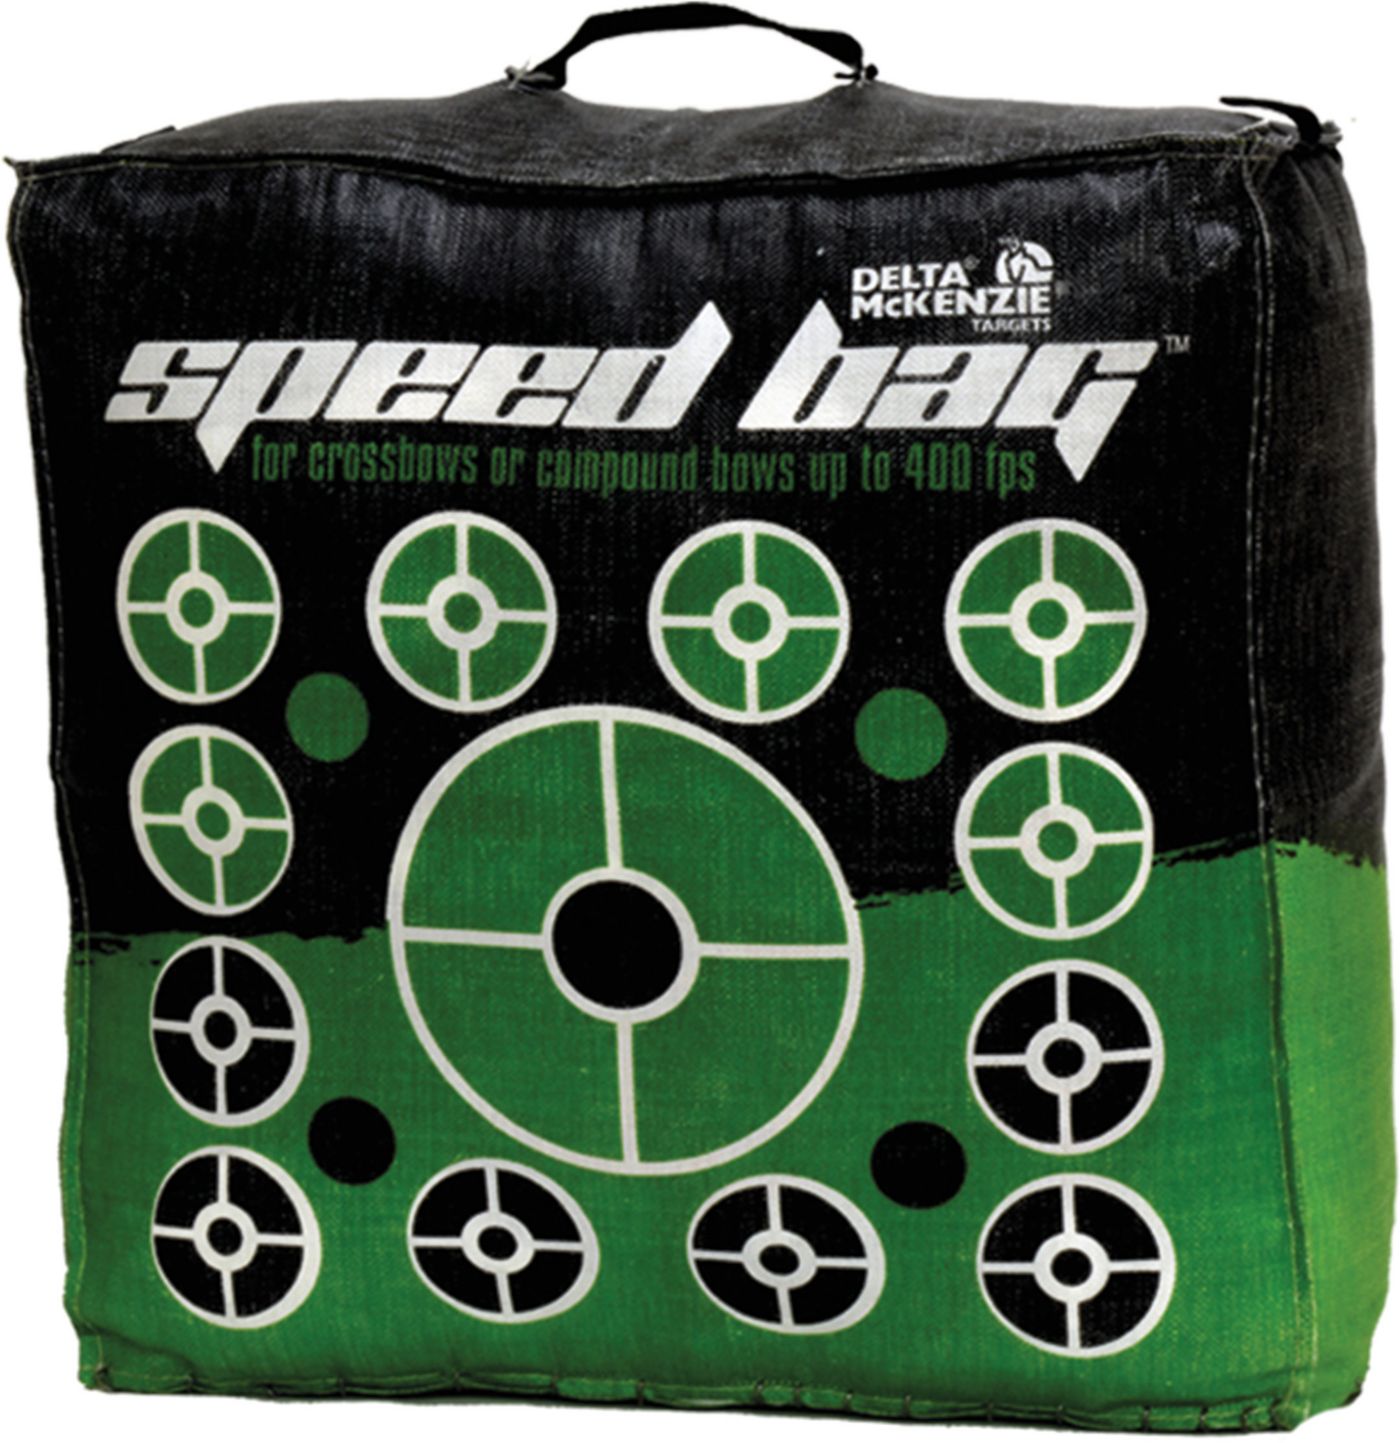 Delta McKenzie Speed Bag Archery Target | Field & Stream